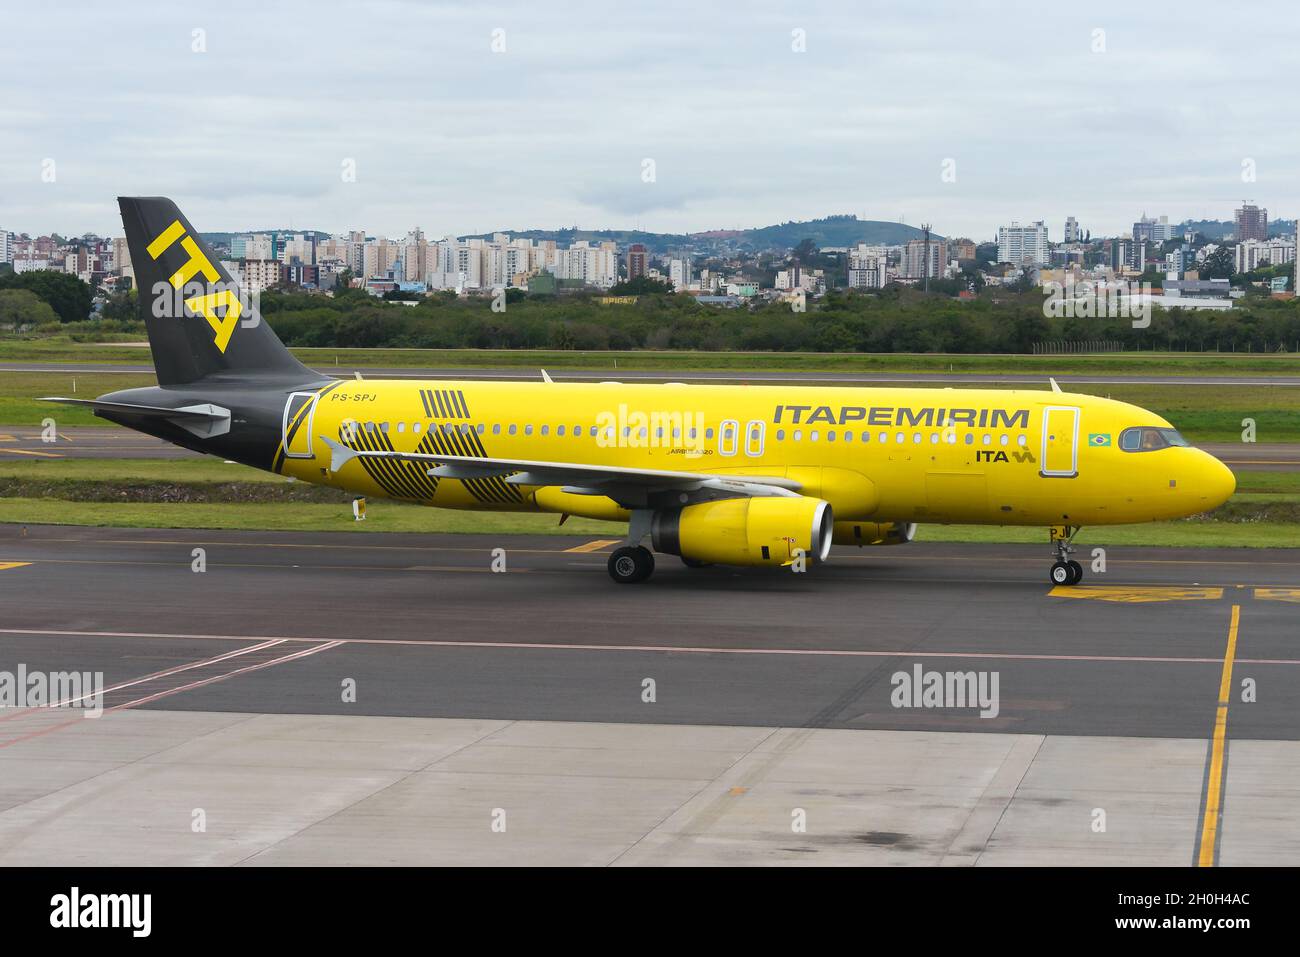 Itapemirim Airlines Airbus A320 en Brasil. Nueva aerolínea brasileña perteneciente al Grupo Itapemirim. Avión Itapemirim con livery amarillo. Foto de stock